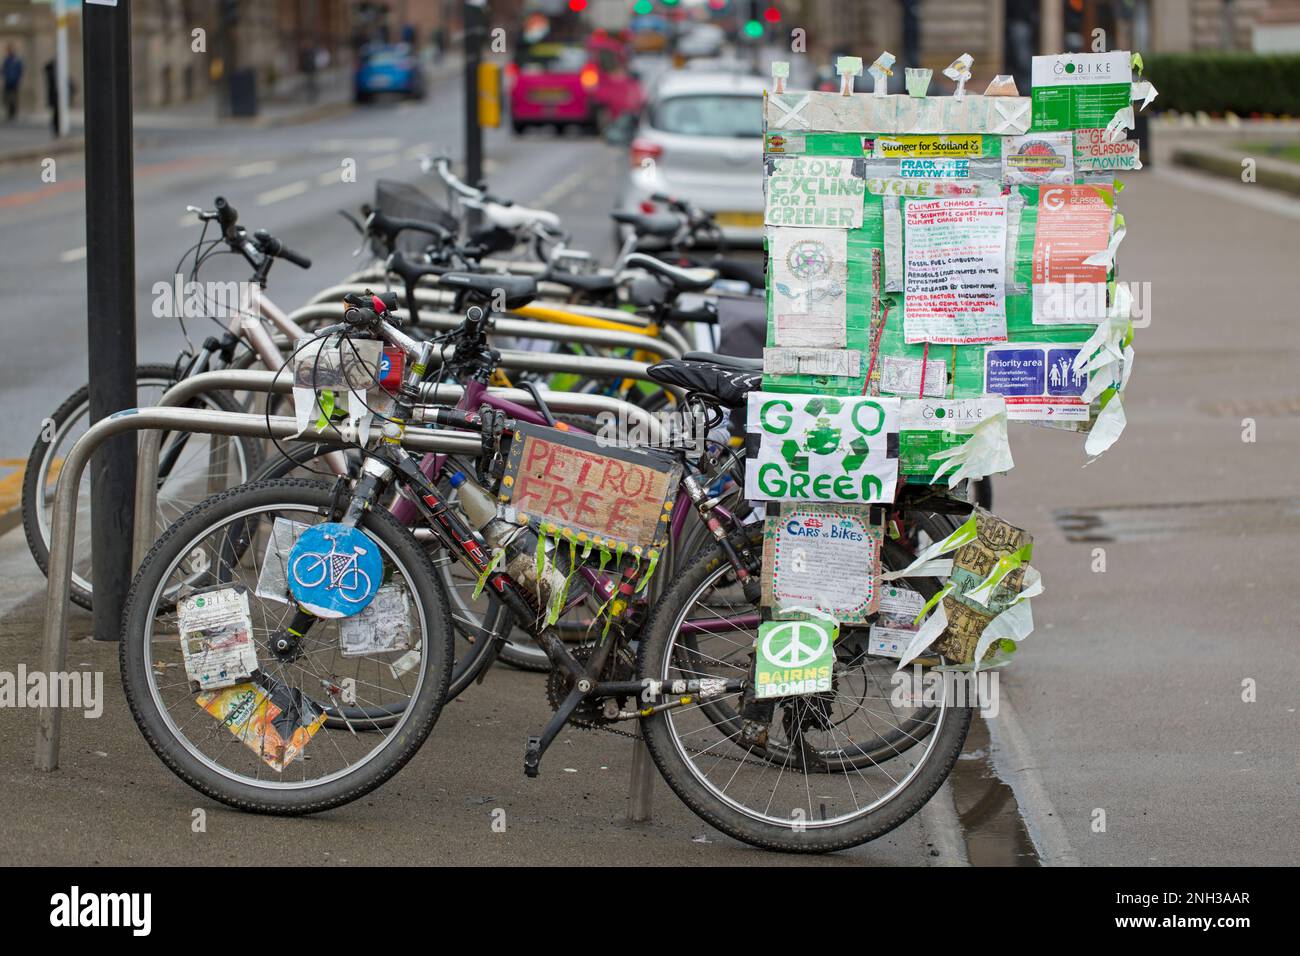 Ein Fahrrad mit Schildern zum Klimawandel, zur Umwelt und zu grünen Themen, George Square, Glasgow, Schottland, Großbritannien, Europa Stockfoto